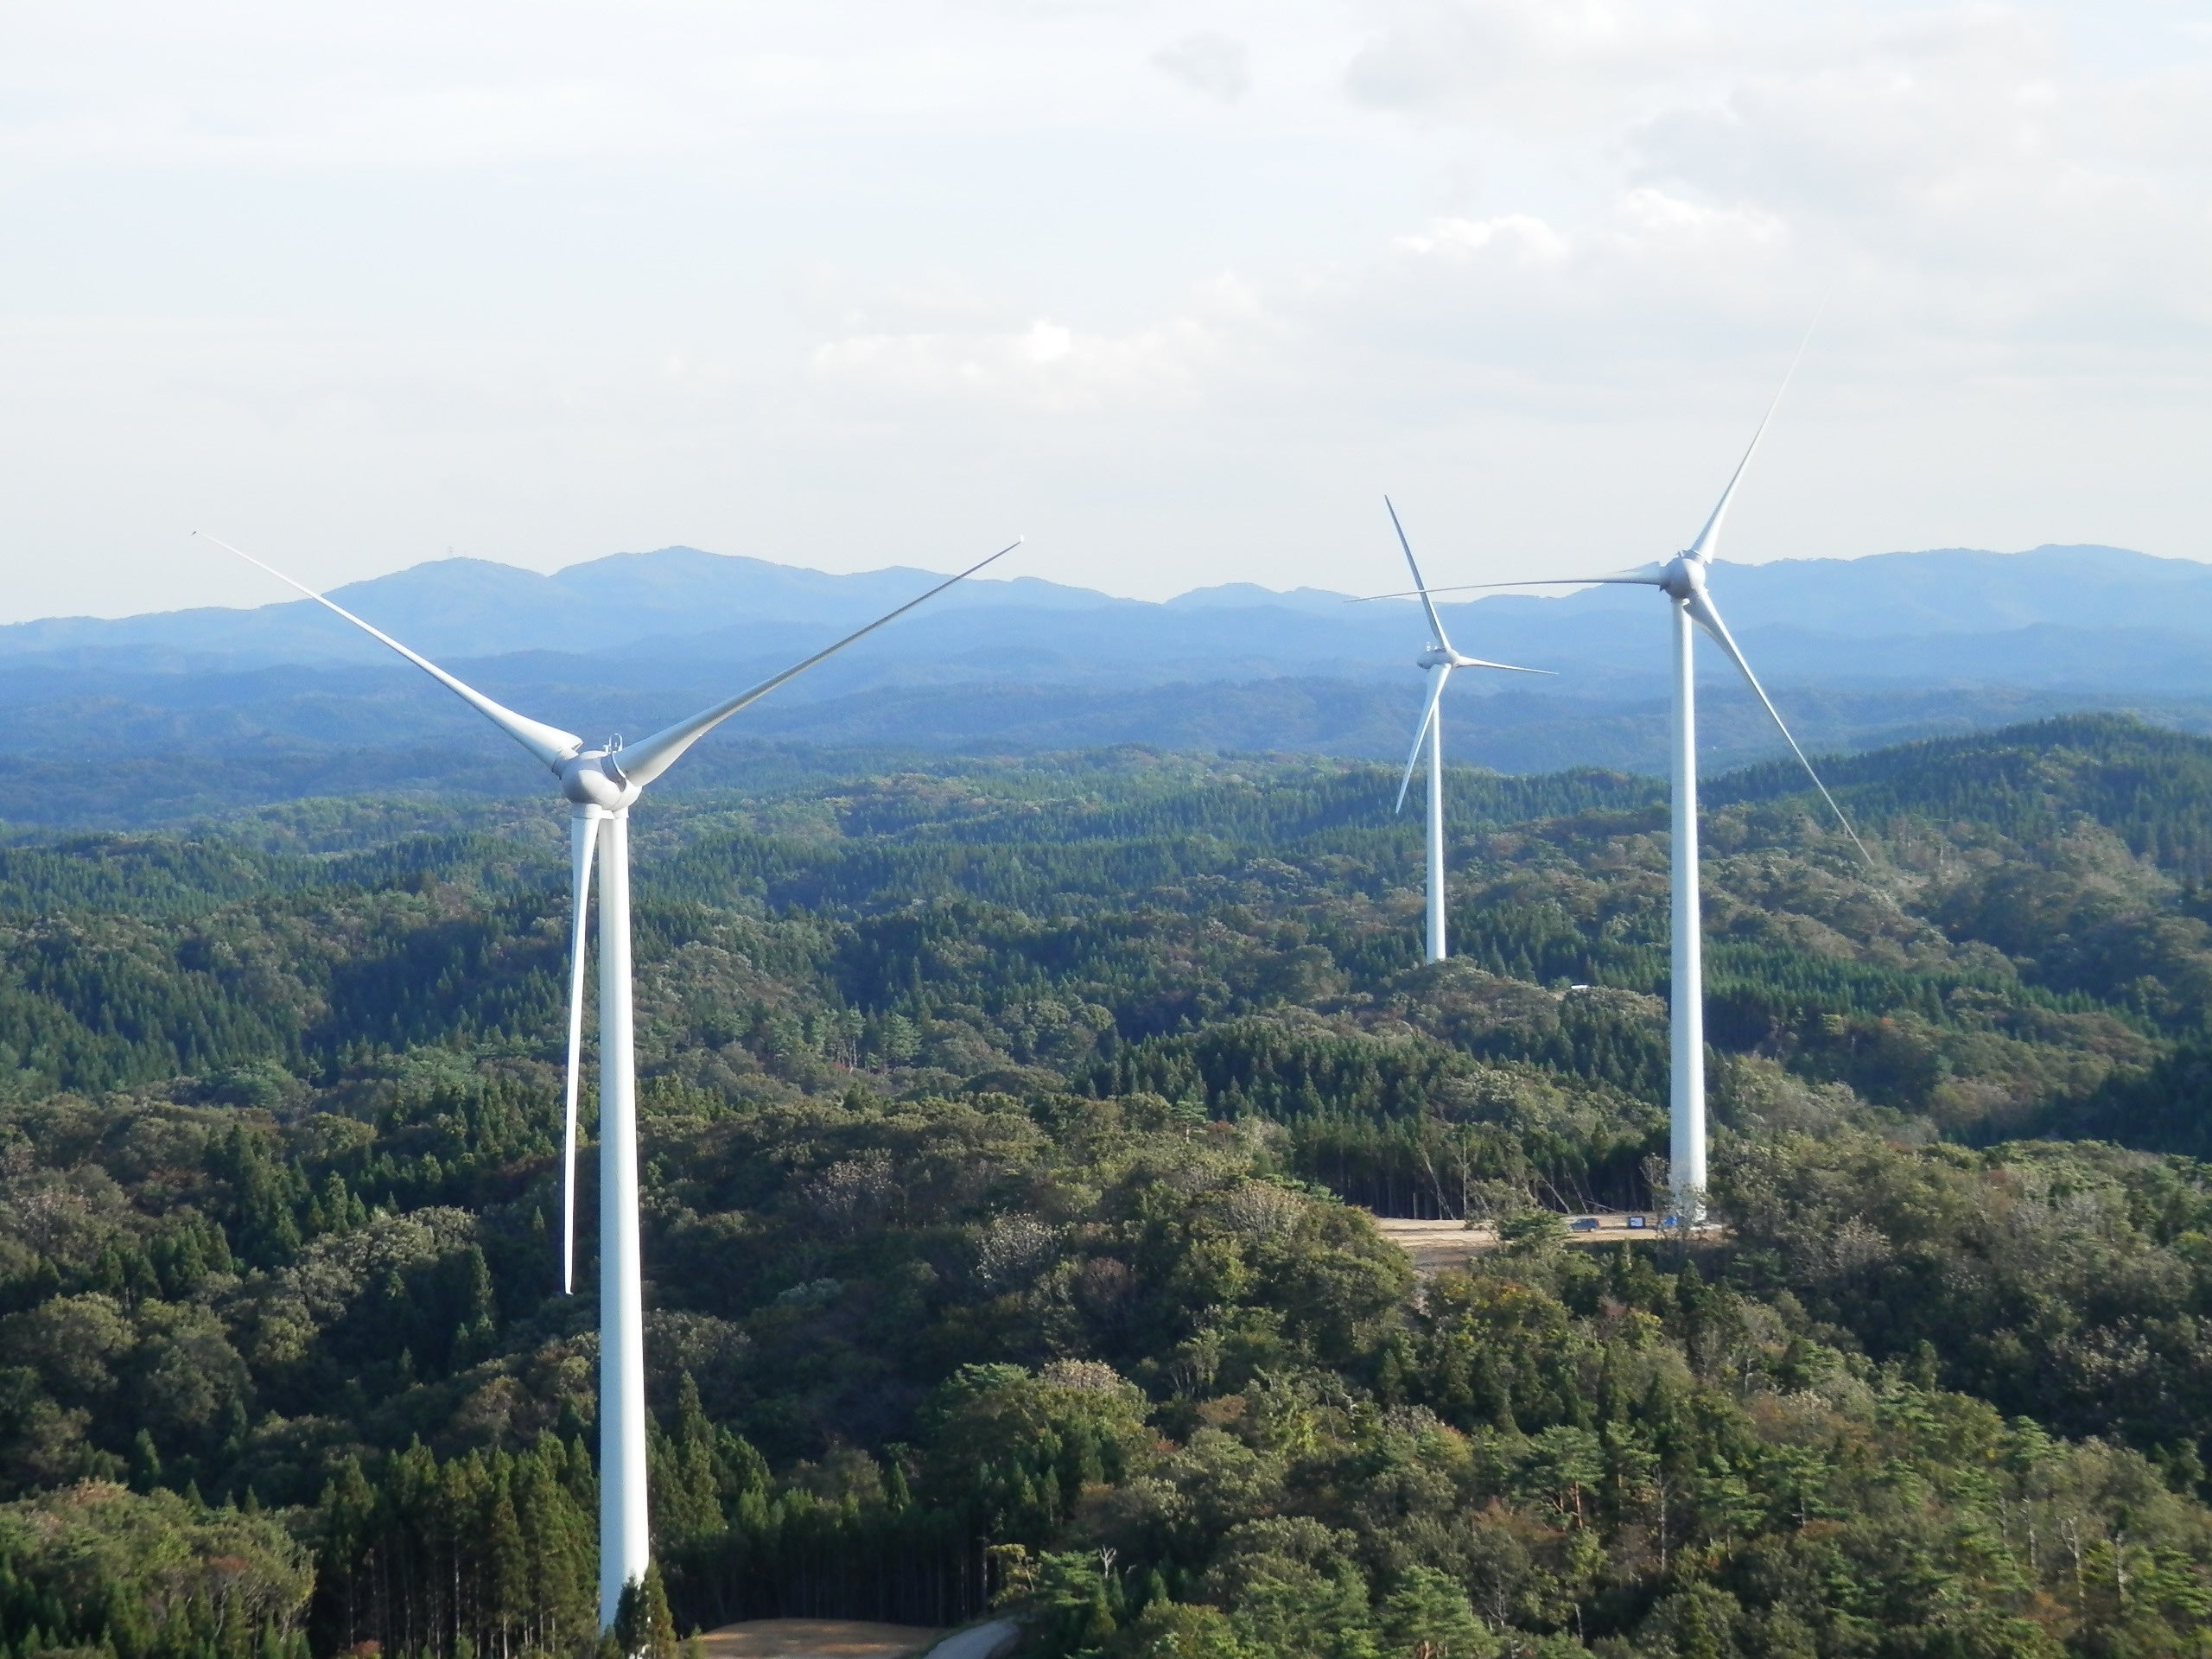 HSEと陸上風力の電力受給契約を締結